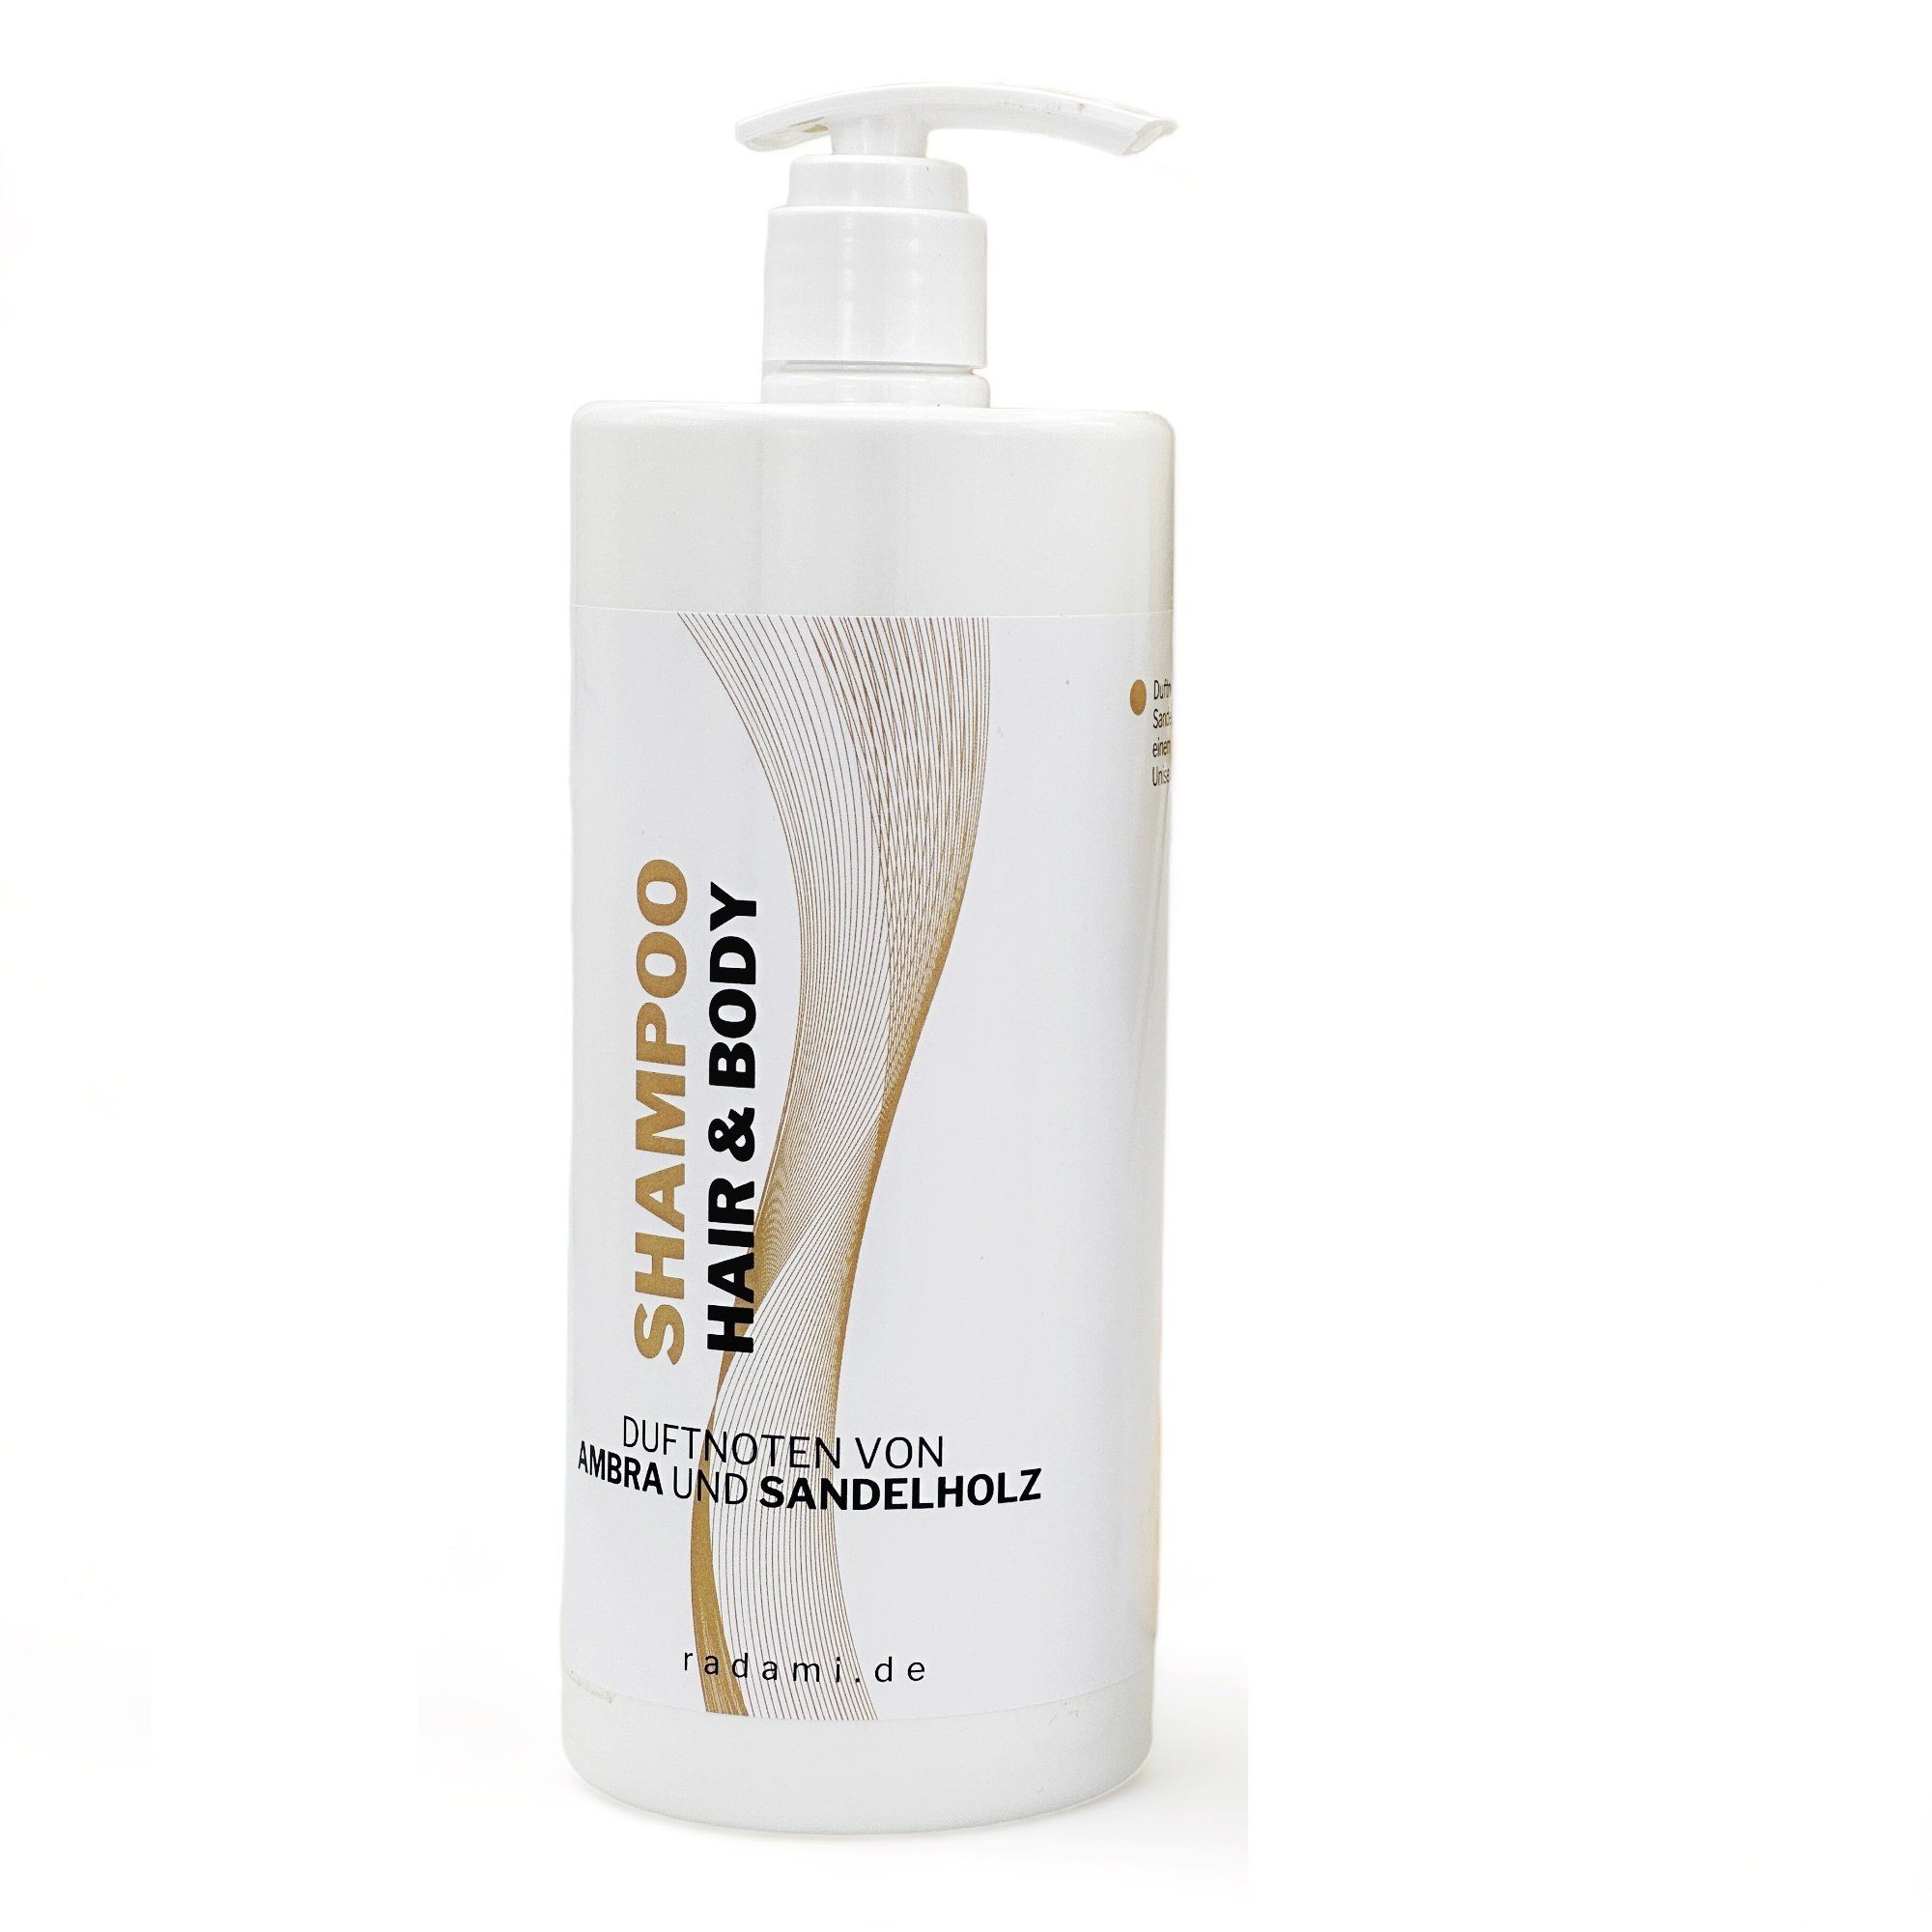 Radami Rohrreinigungspistole Shampoo Hair und Body Duschgel Duft Ambra / Sandelholz 1 L | Reinigungs-Sets